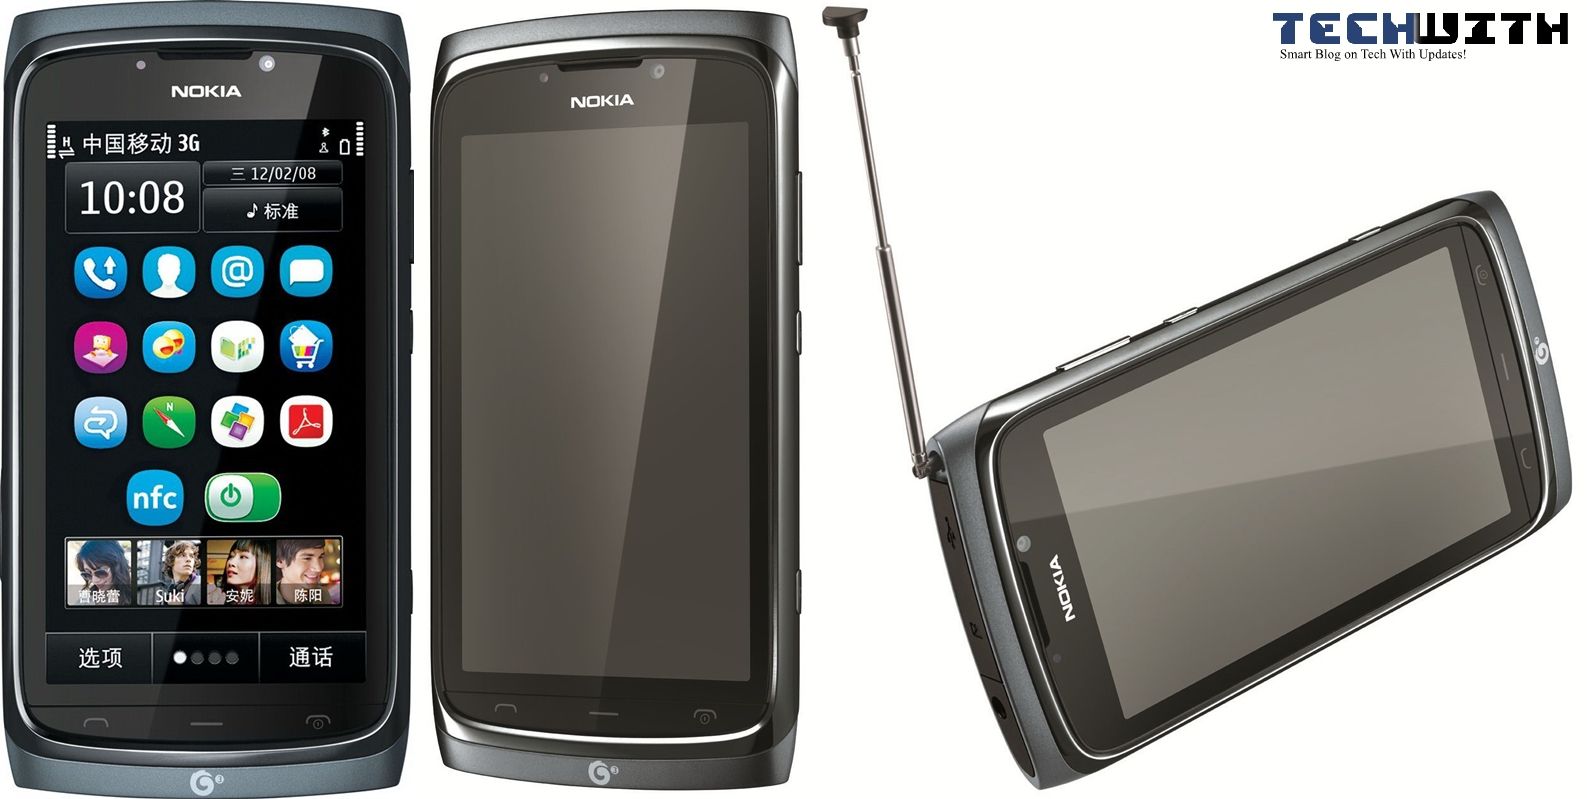 Những di động Nokia Symbian không được bán tại thị trường Việt.